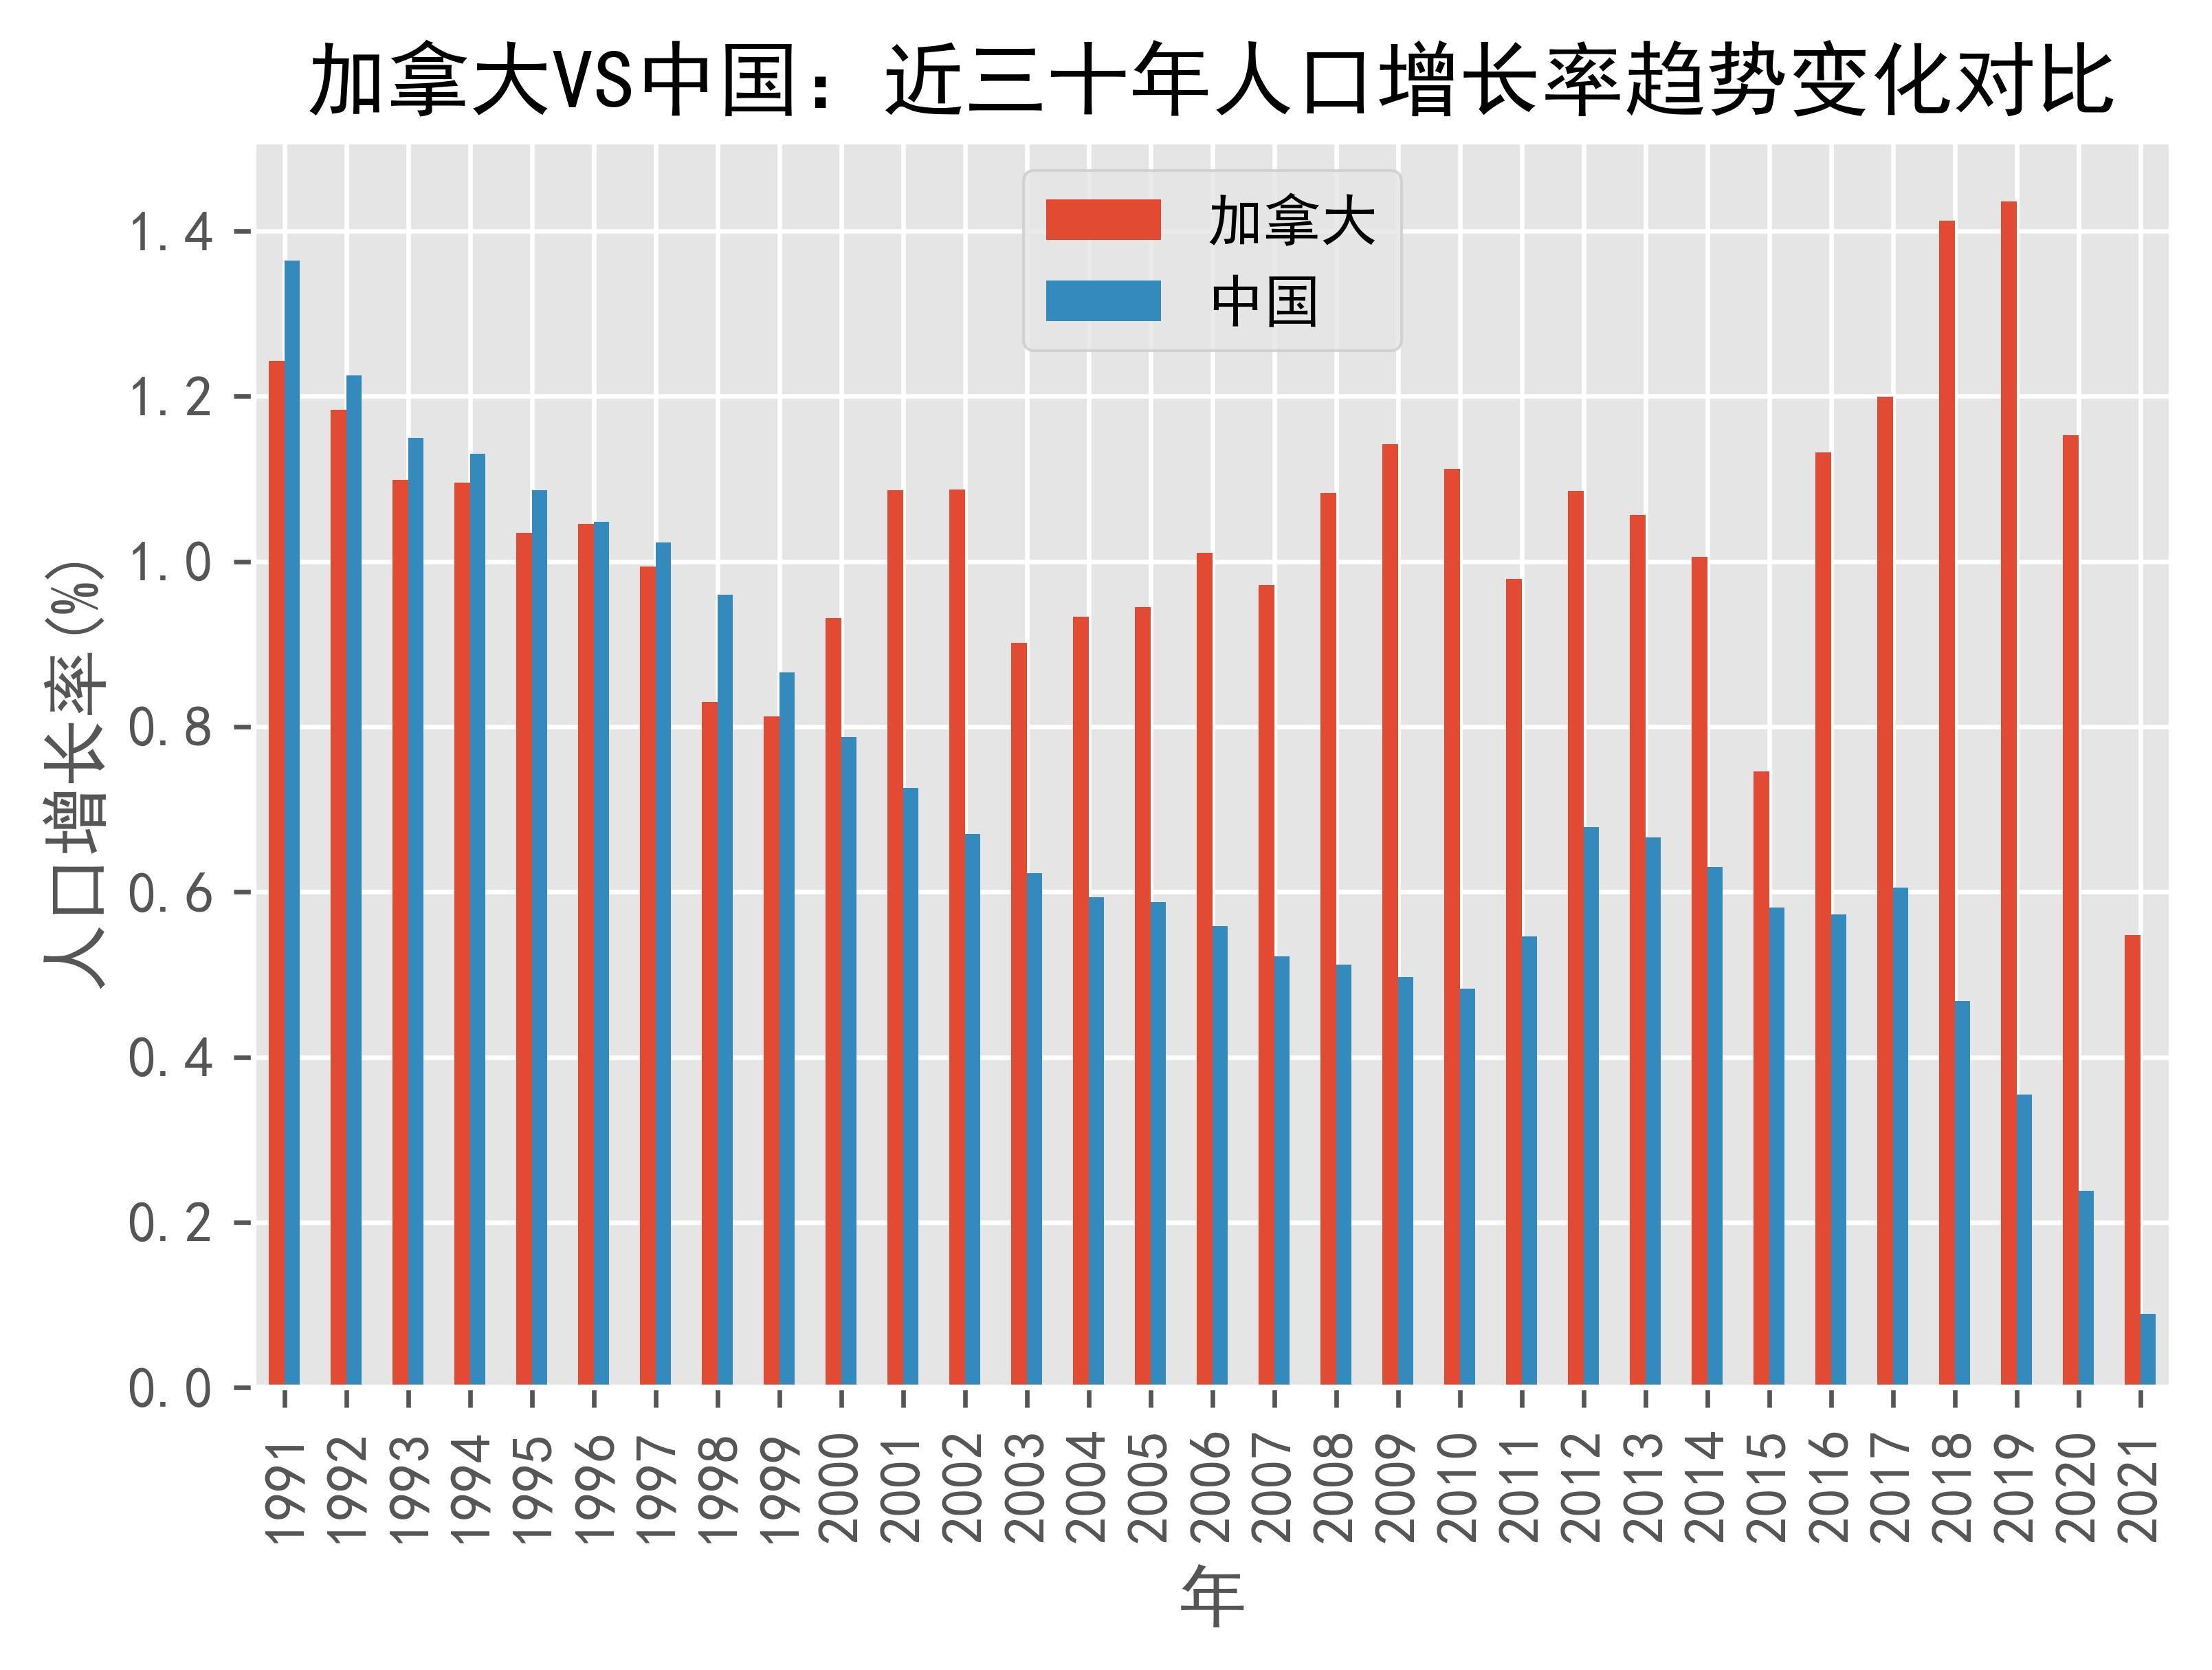 加拿大vs中国人口增长率趋势对比(1991年